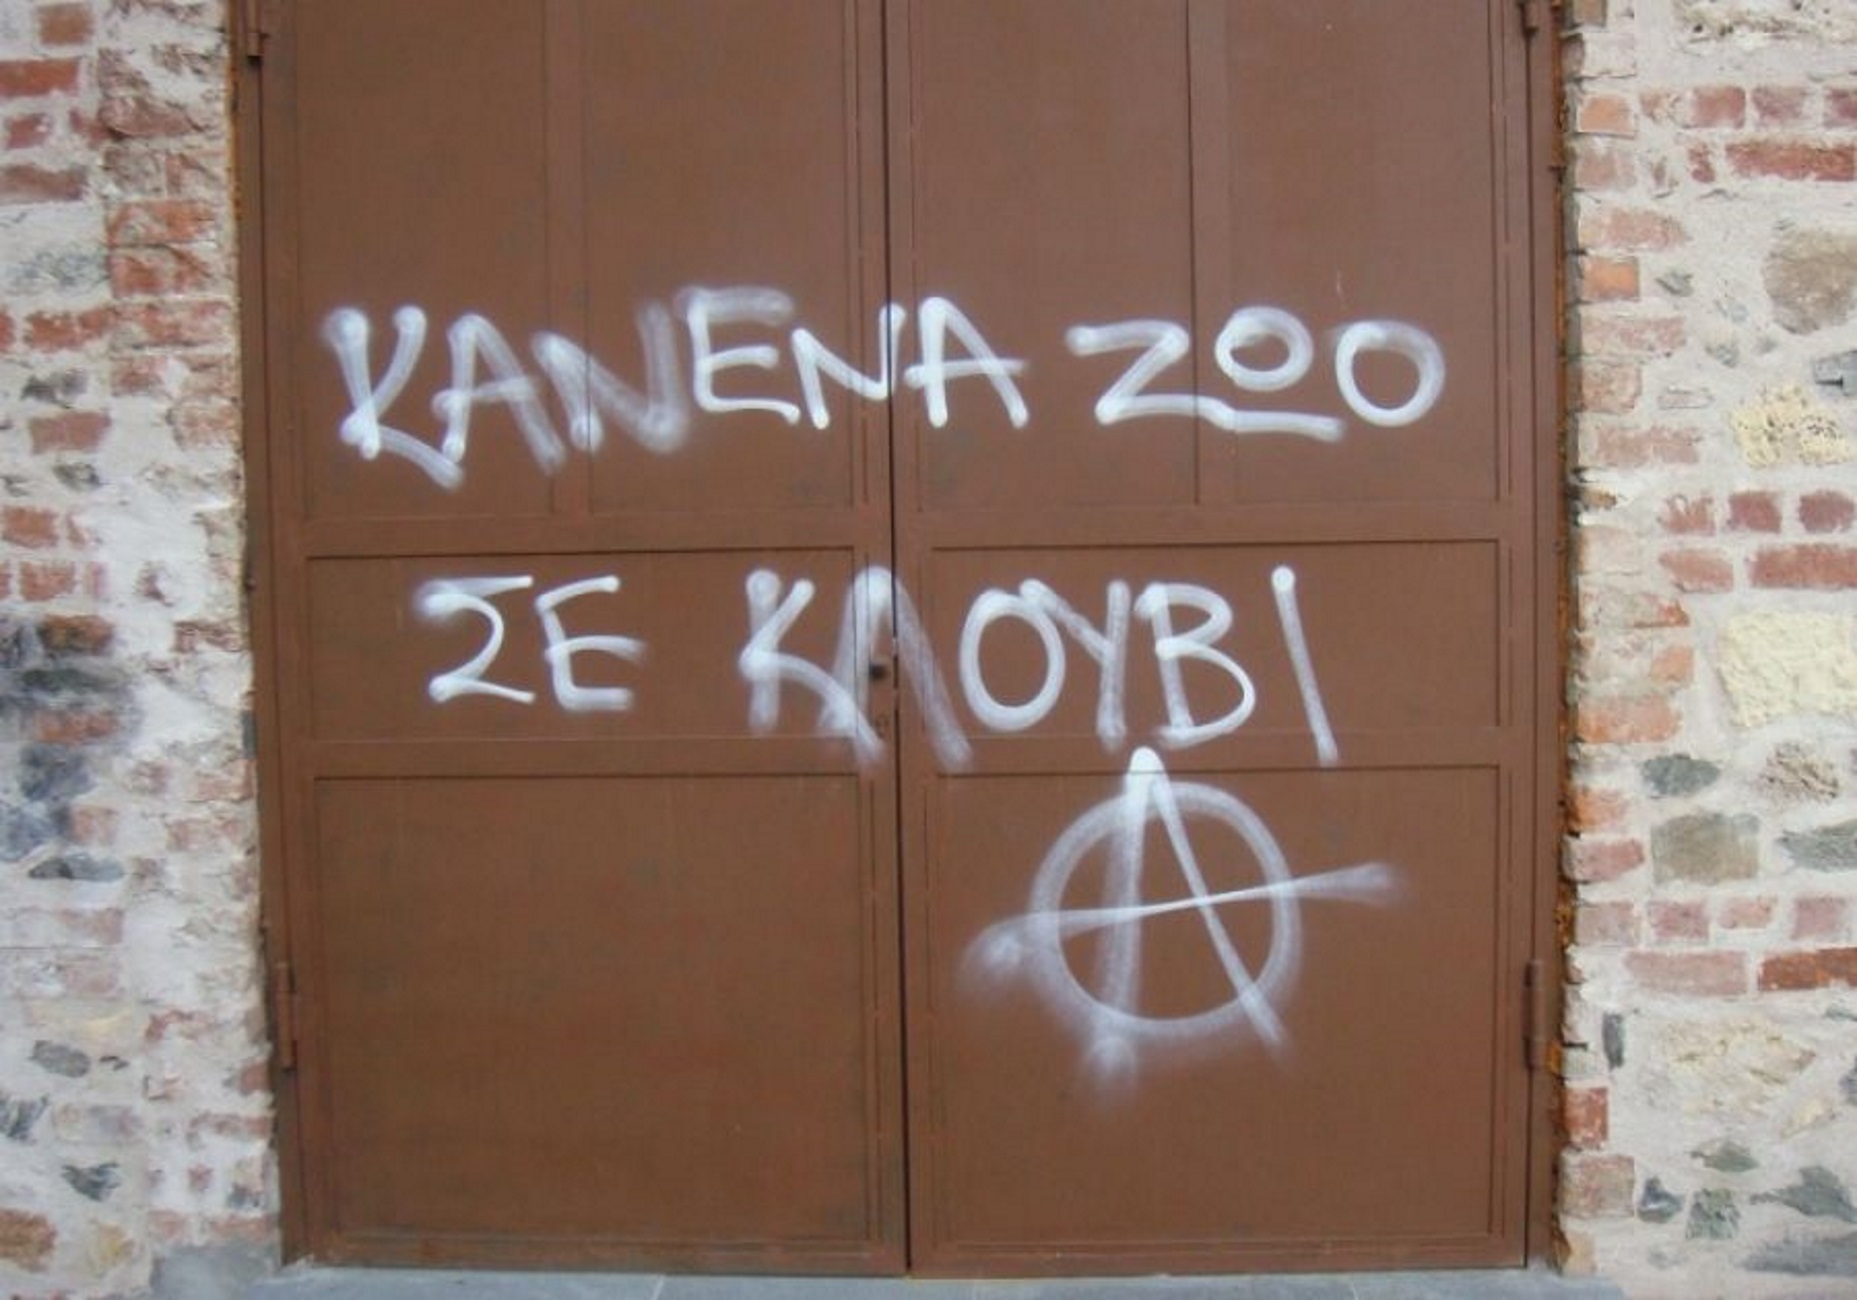 Θεσσαλονίκη: Παρέμβαση αντιεξουσιαστών στο κλαμπ που είχε σκύλους σε κλουβιά – “Θα μας βρίσκουν μπροστά τους”!